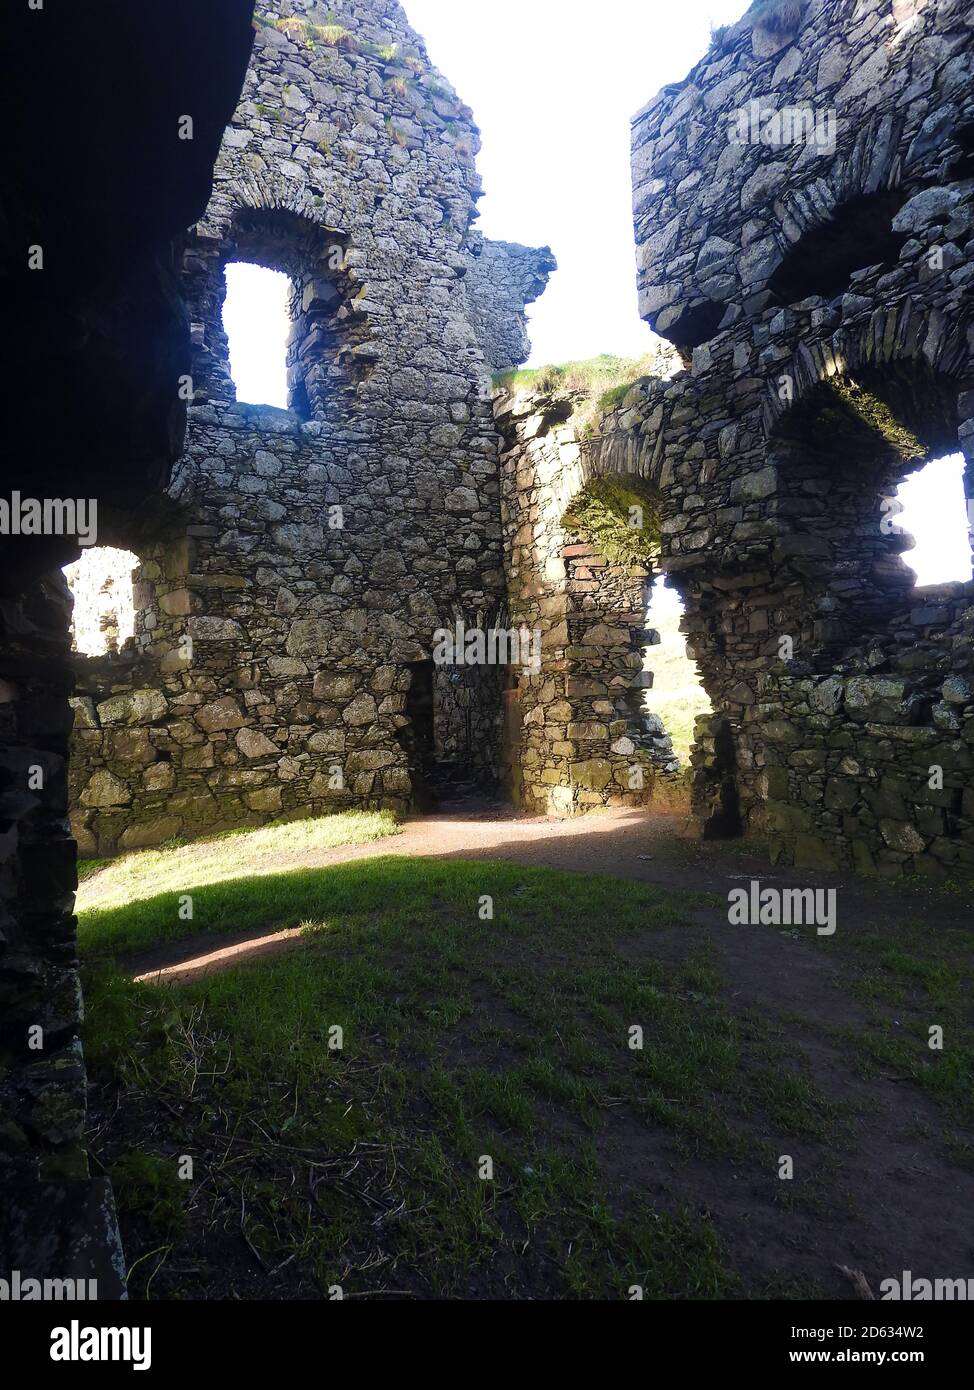 Okt 2020 - Innere des Dunskey Castle in der Nähe von Portpatrick Schottland. Portpatrick ist die geplante Endstation für einen geplanten Tunnel oder eine Brücke linke nach Larne in Irland. Stockfoto